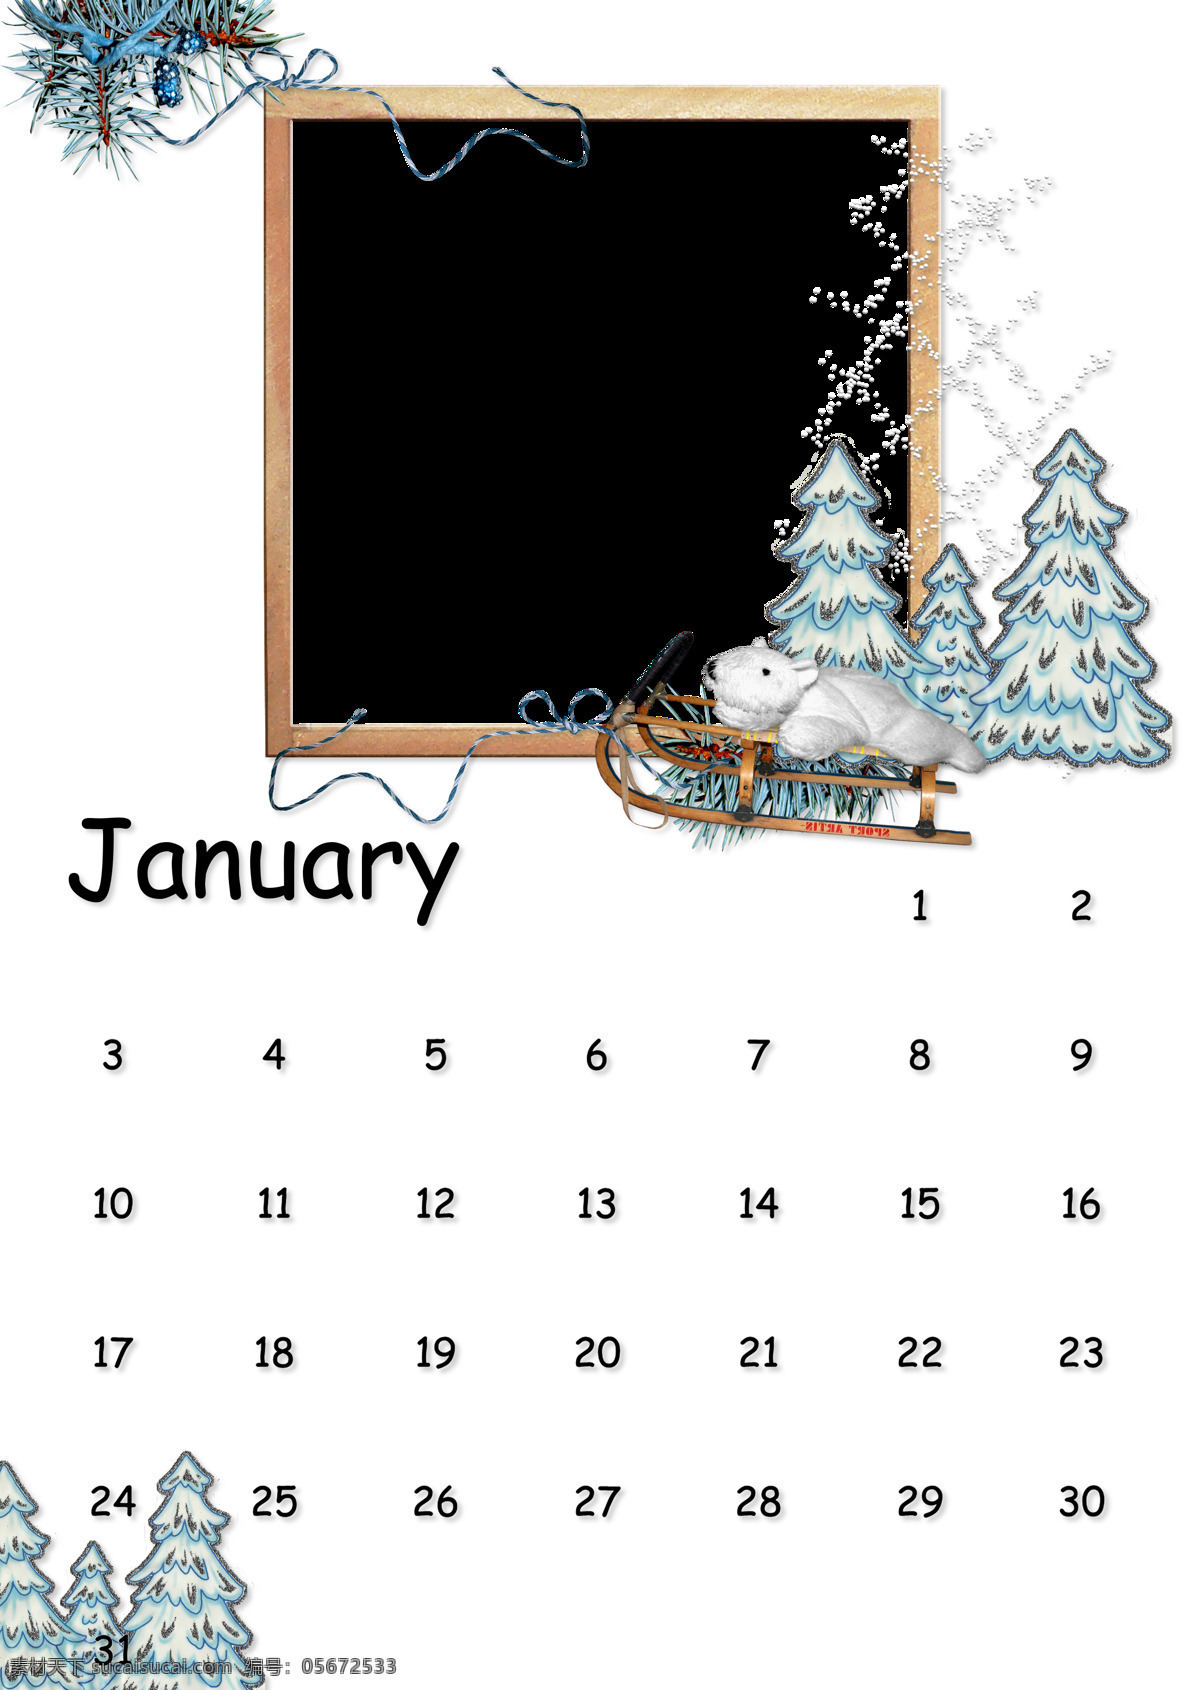 1月 2010 边框相框 底纹边框 木质相框 圣诞饰品 松树 月 月历 相框 设计素材 模板下载 1月月历相框 月历相框 雪景相框 雪橇 白熊 艺术相框 年 psd源文件 婚纱 儿童 写真 相册 模板